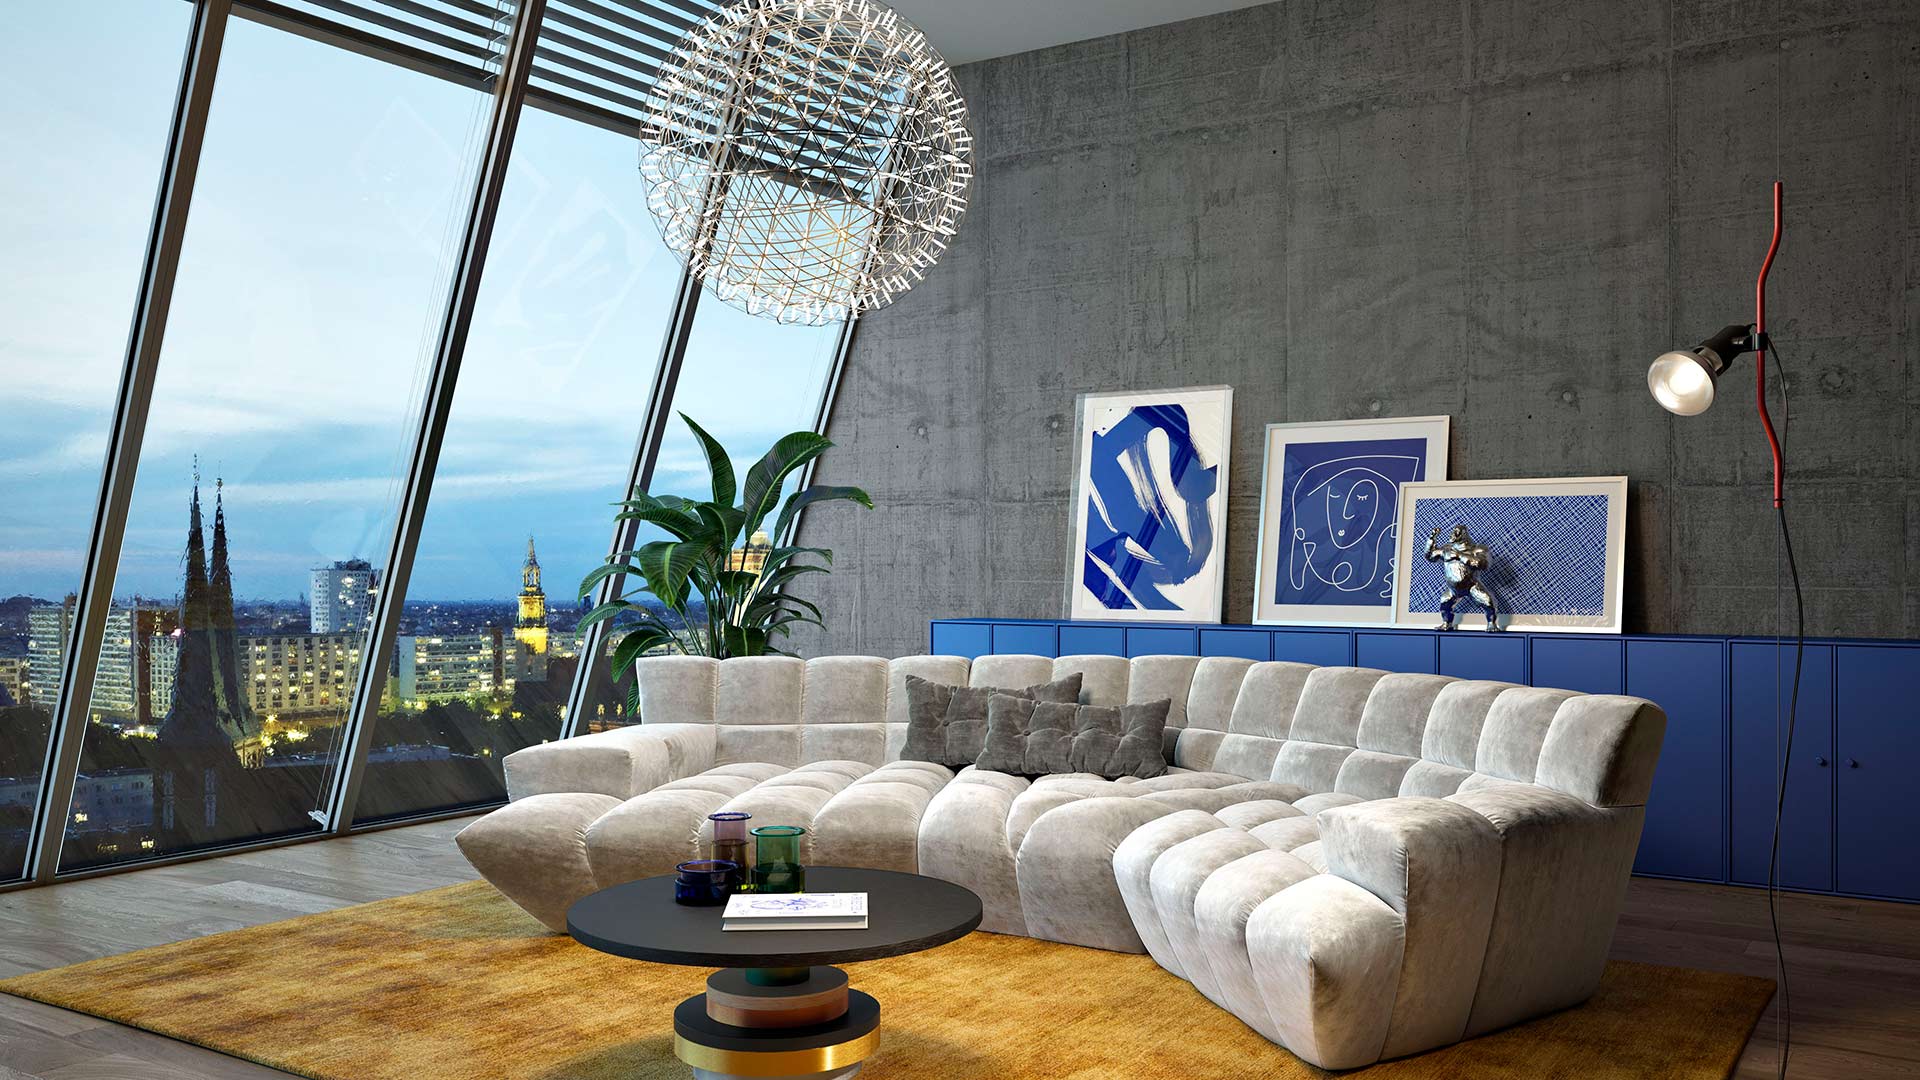 Bretz Cloud 7 Sofa mit Rautenmuster in einem beigen Velours in einem coolen Wohnzimmer mit Stadtausblick.